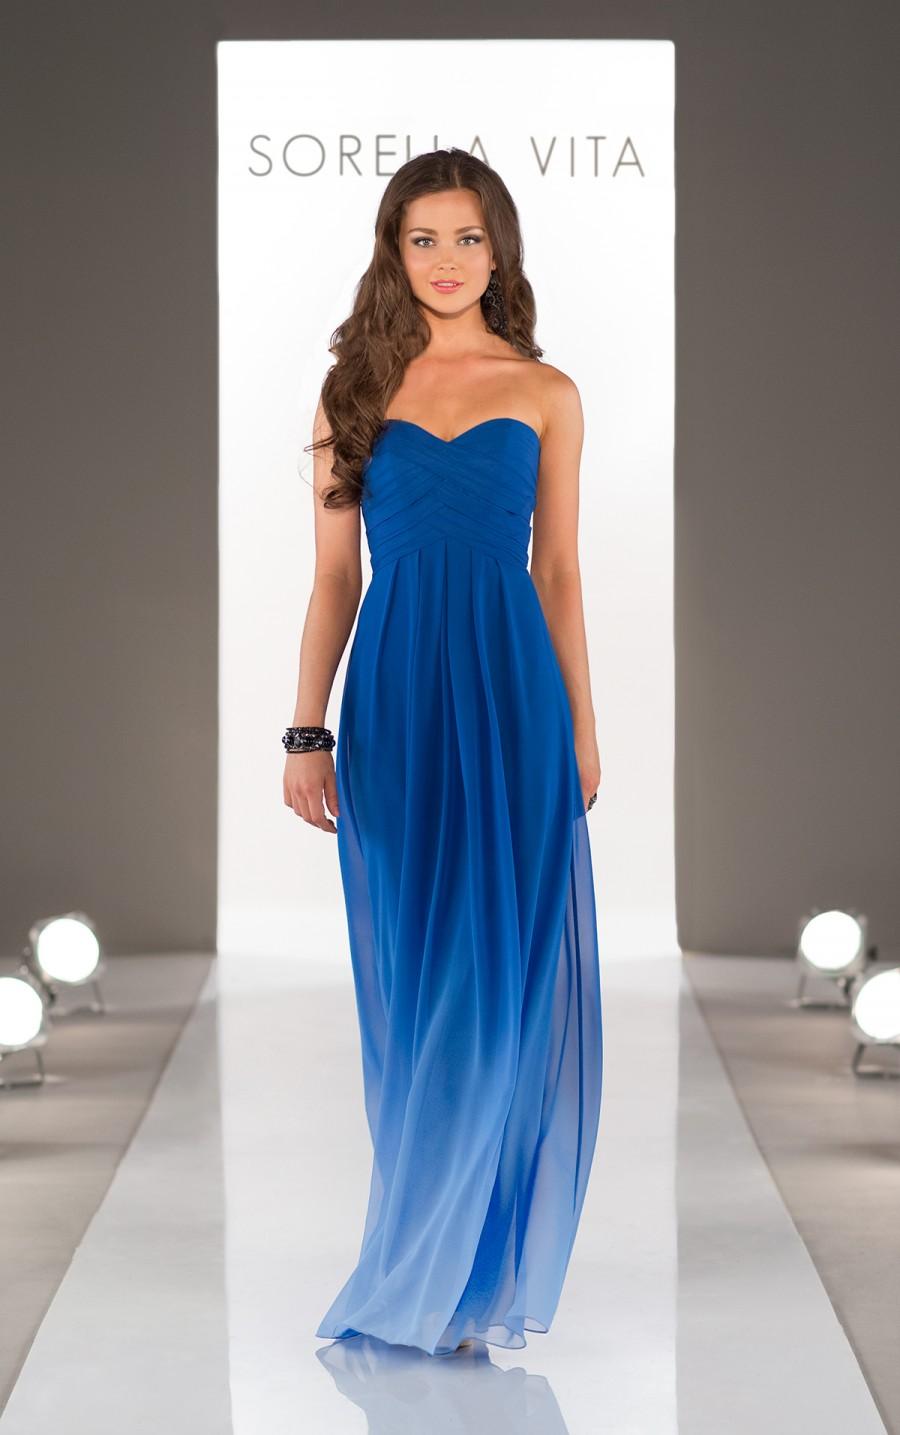 زفاف - Sorella Vita Blue Ombre Bridesmaid Dress Style 8405OM